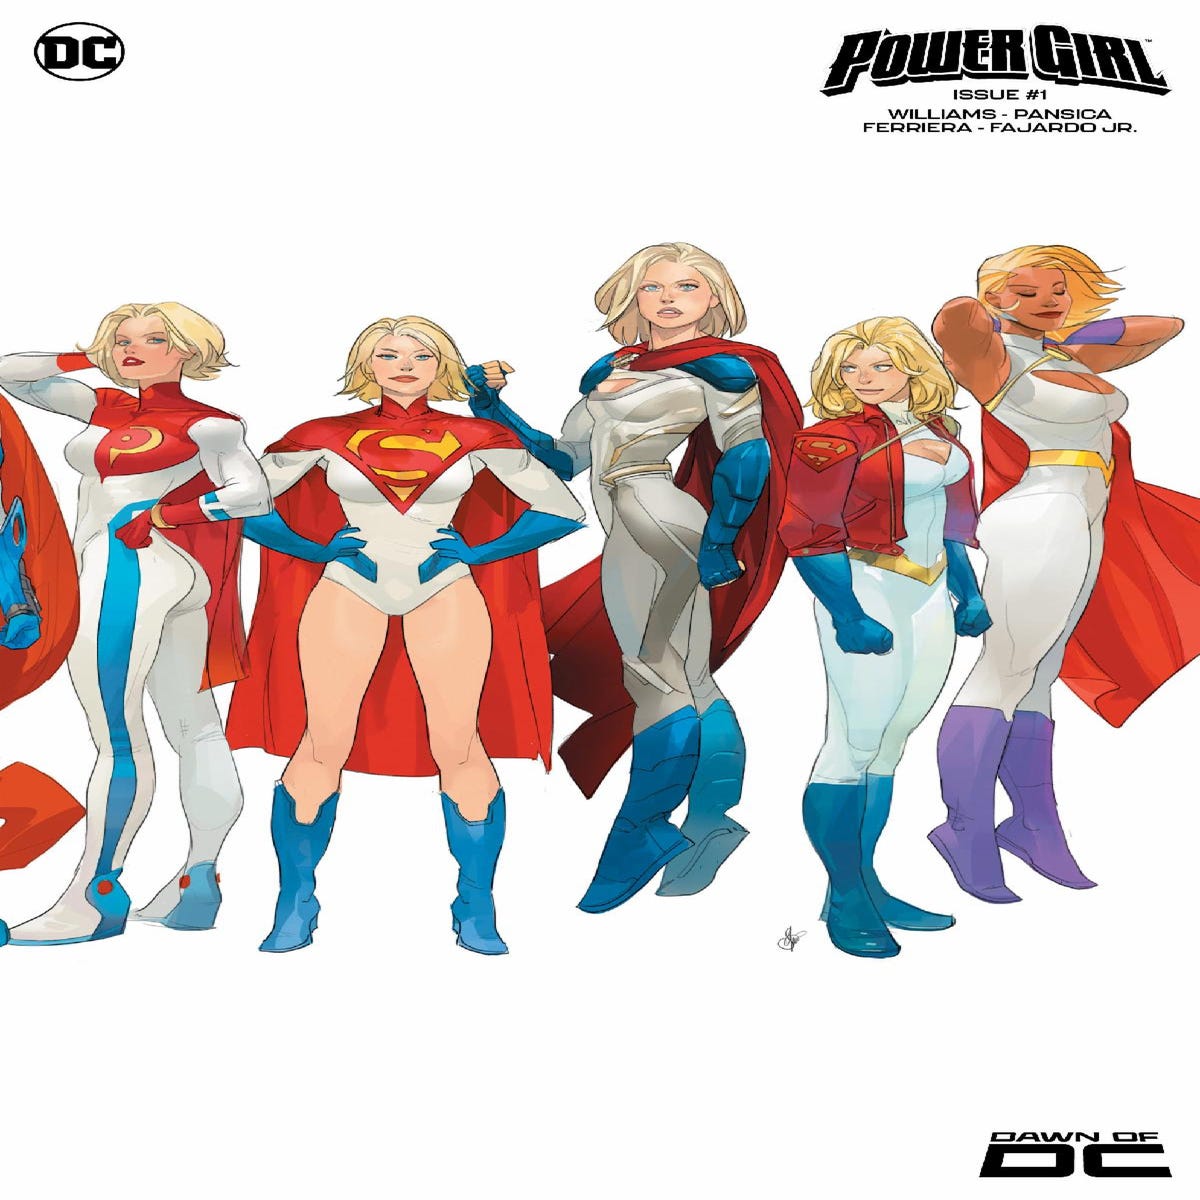 Women Power in Comics